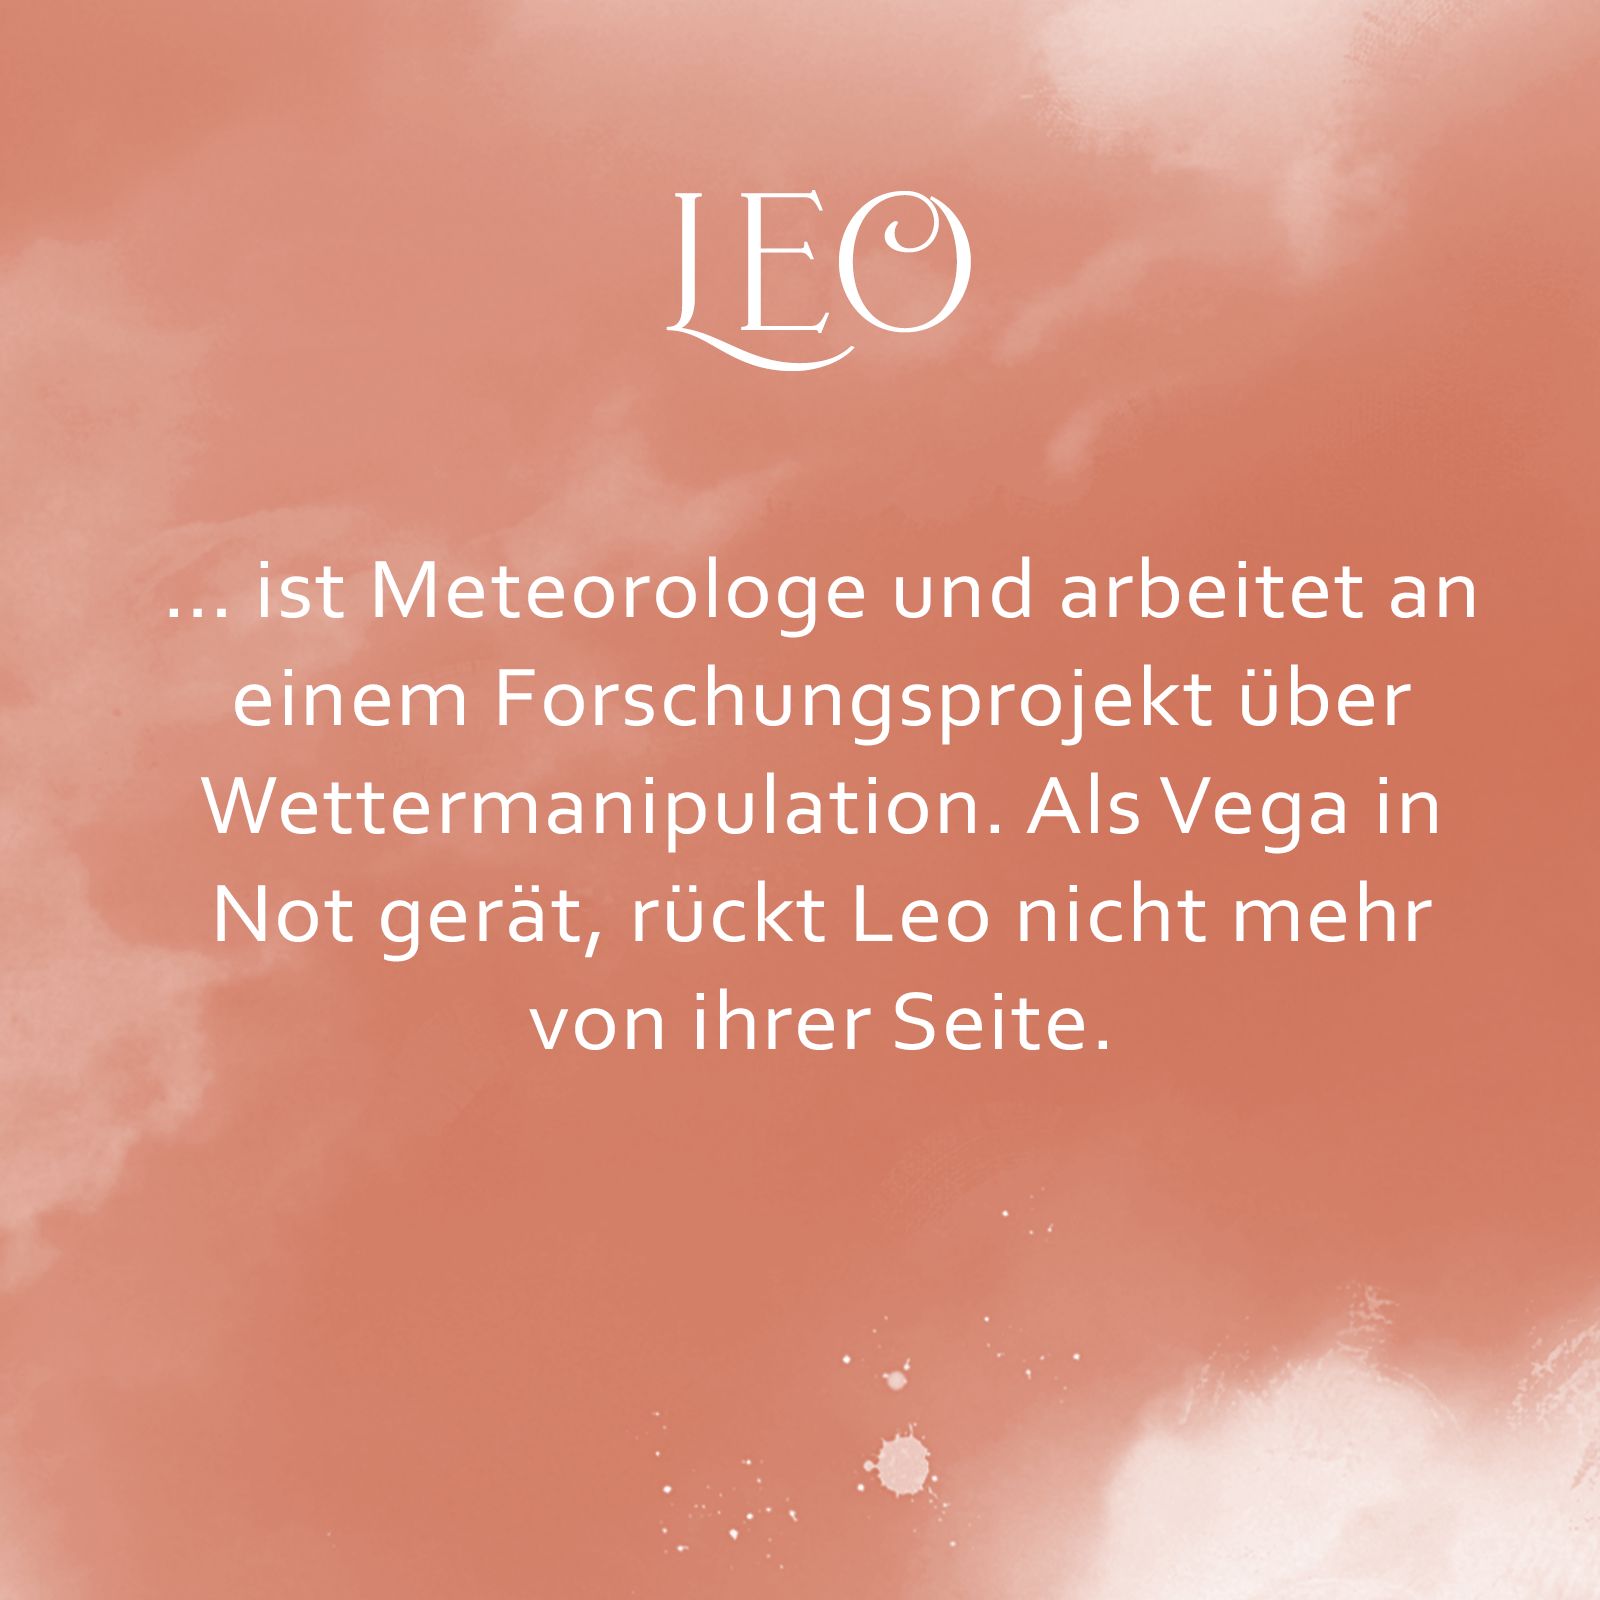 Orangene Kachel mit Text: "Leo ist Meteorologe und arbeitet an einem Forschungsprojekt zur Wettermanipulation. Als Vega in Not gerät, rückt Leo nicht mehr von ihrer Seite."